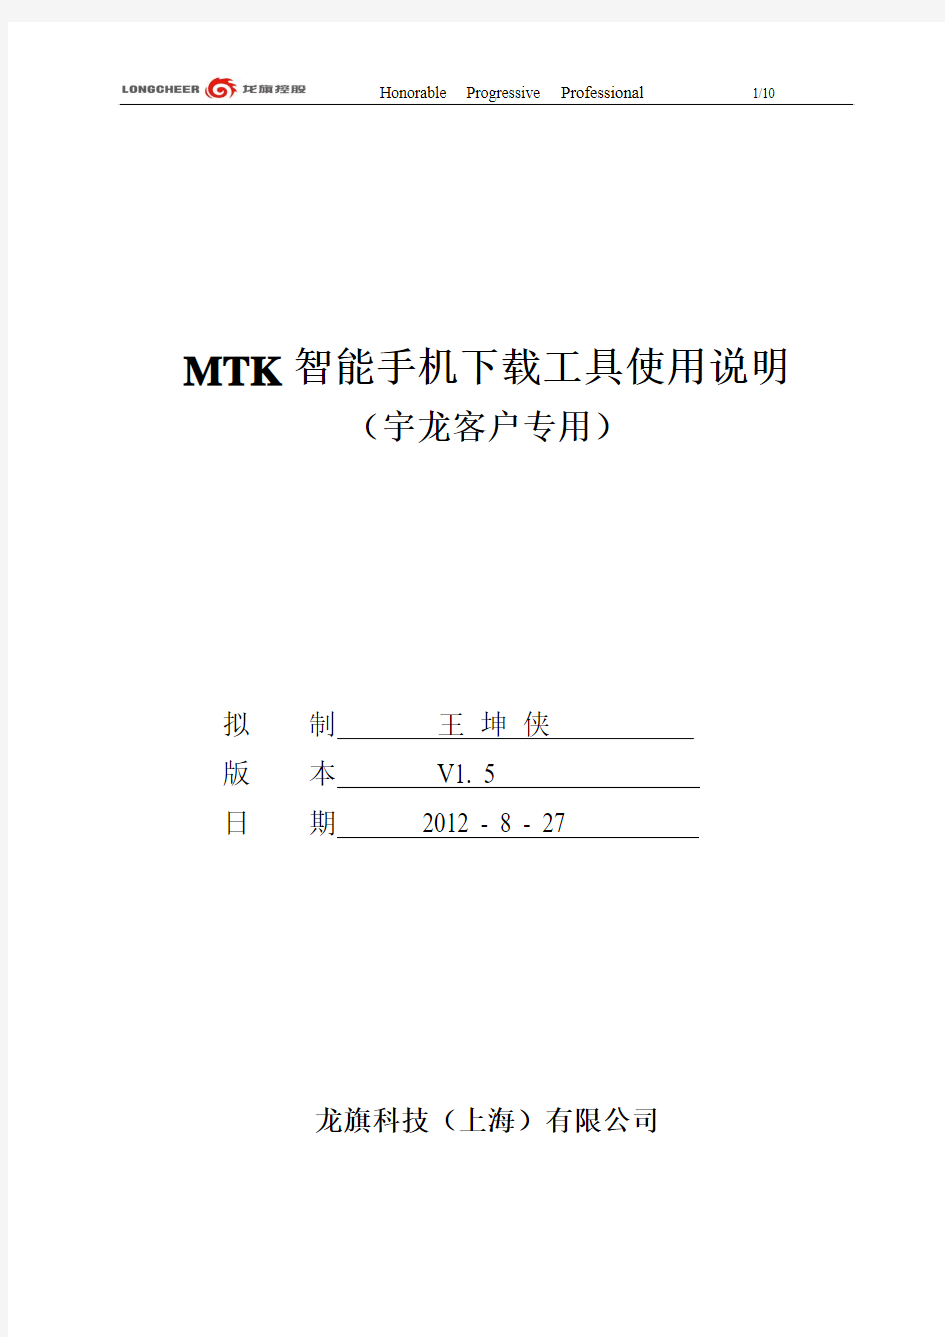 MTK智能手机下载工具使用说明_宇龙专用